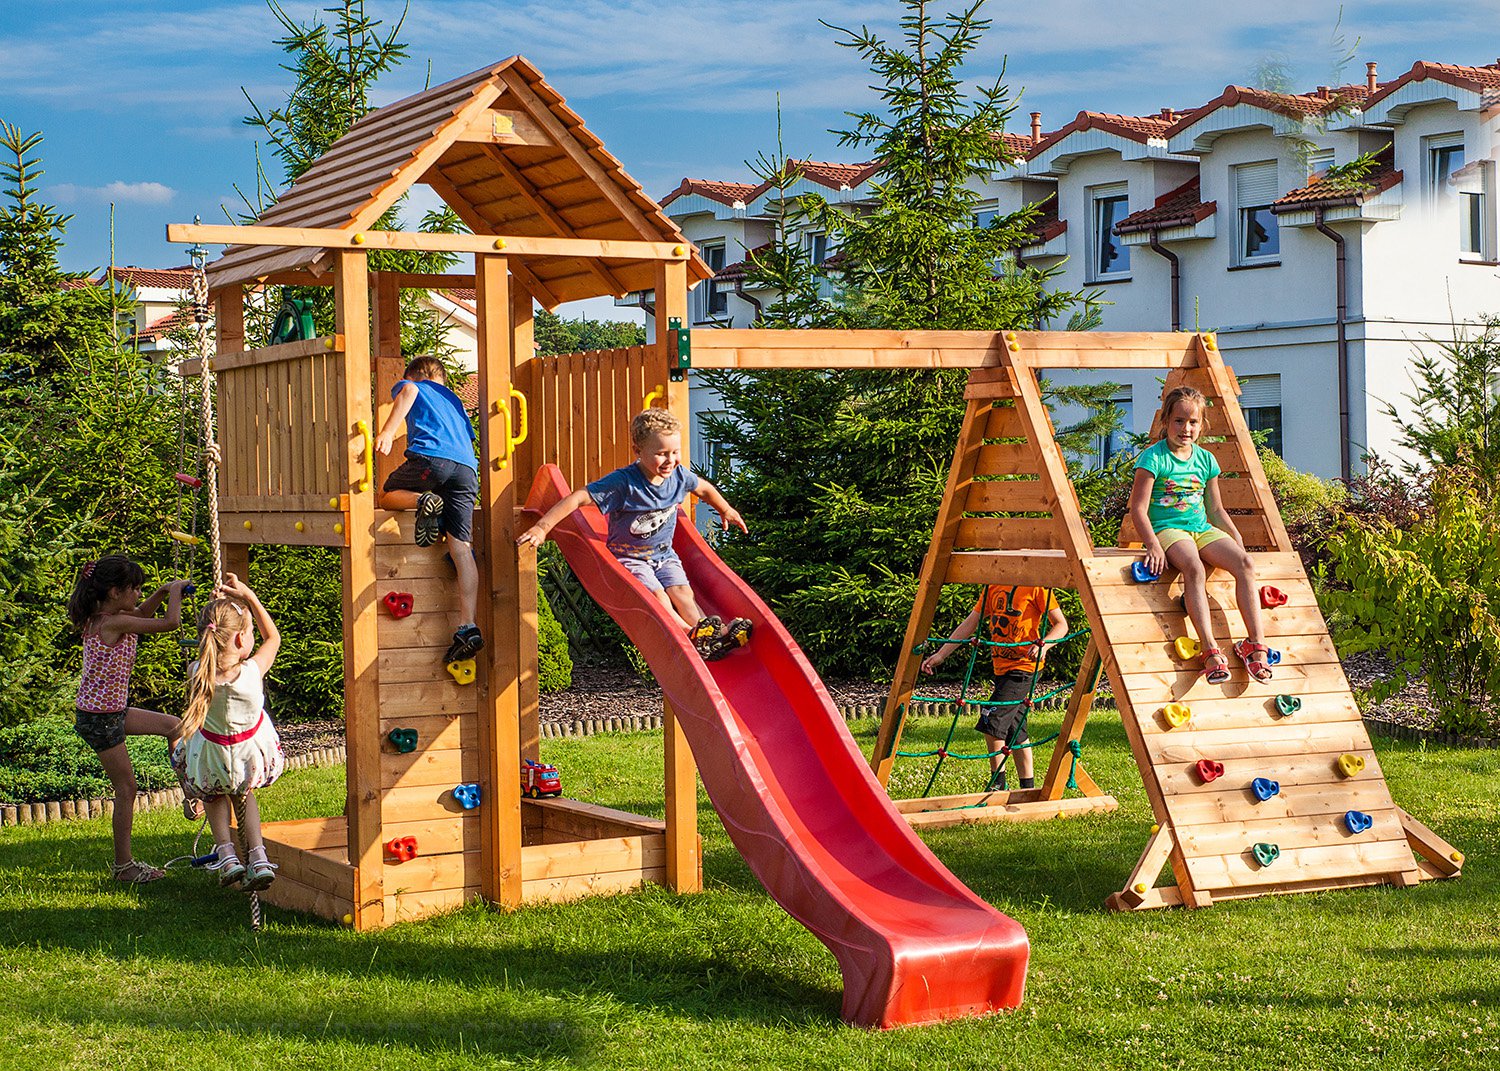 Площадки для детей: Список лучших площадок Санкт-Петербурга для детского отдыха в 2021 году